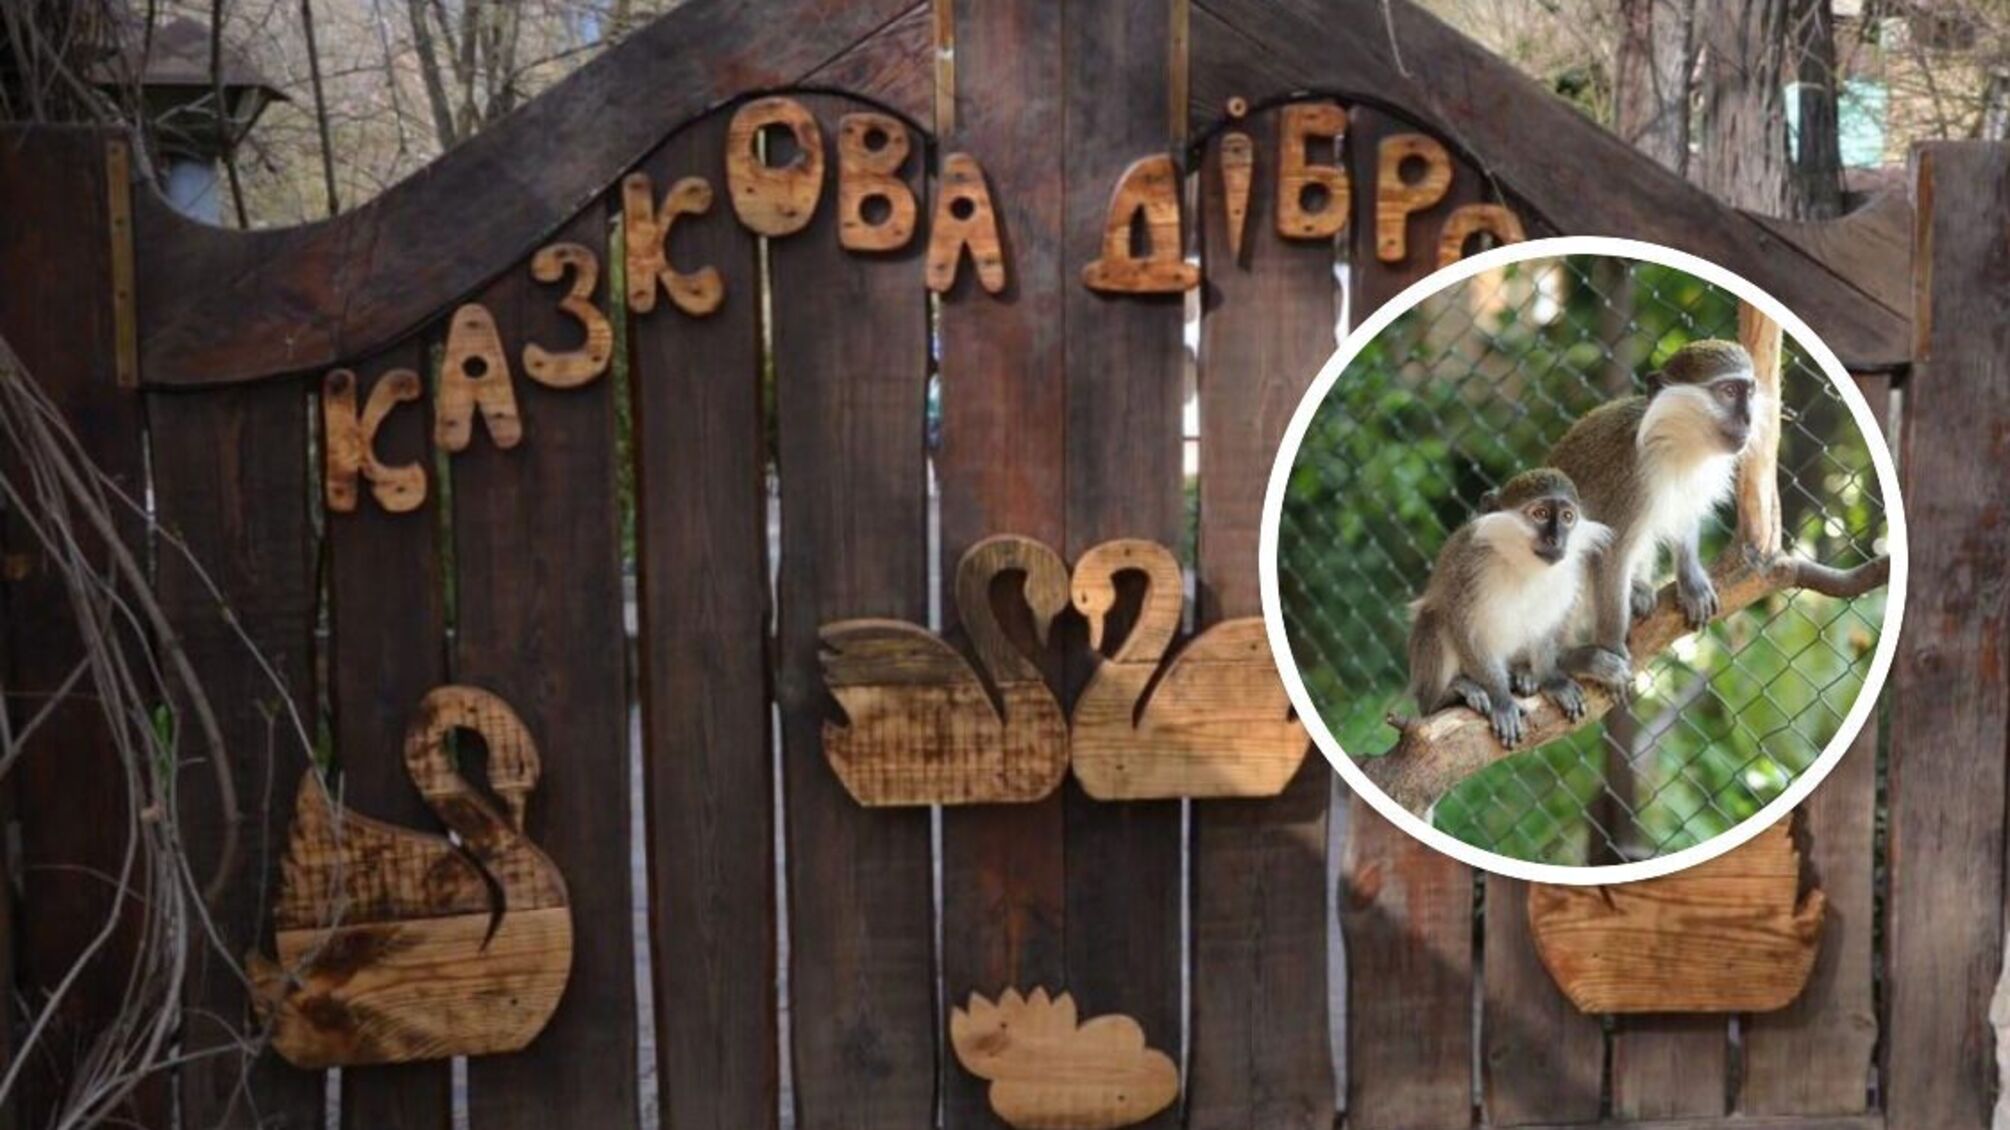 Зоопарк 'Сказочная дубрава' в Новой Каховке Херсонской области - сообщают о гибели всех имеющихся животных